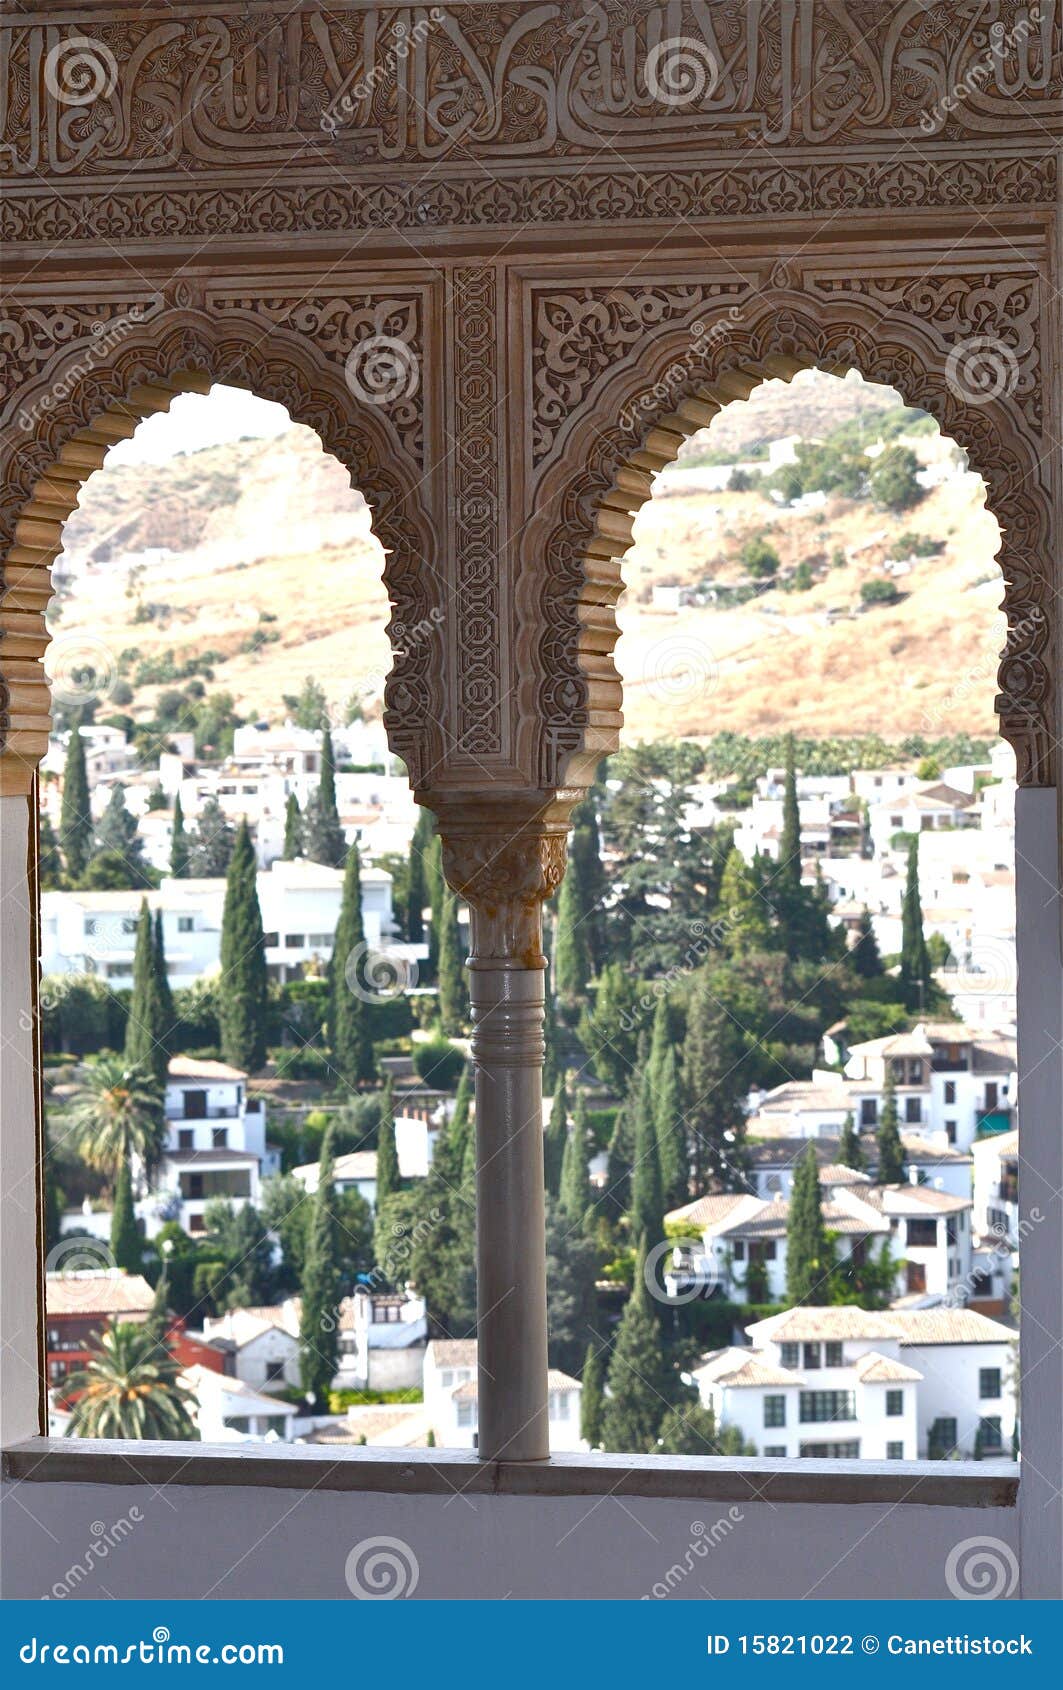 view at la alhambra